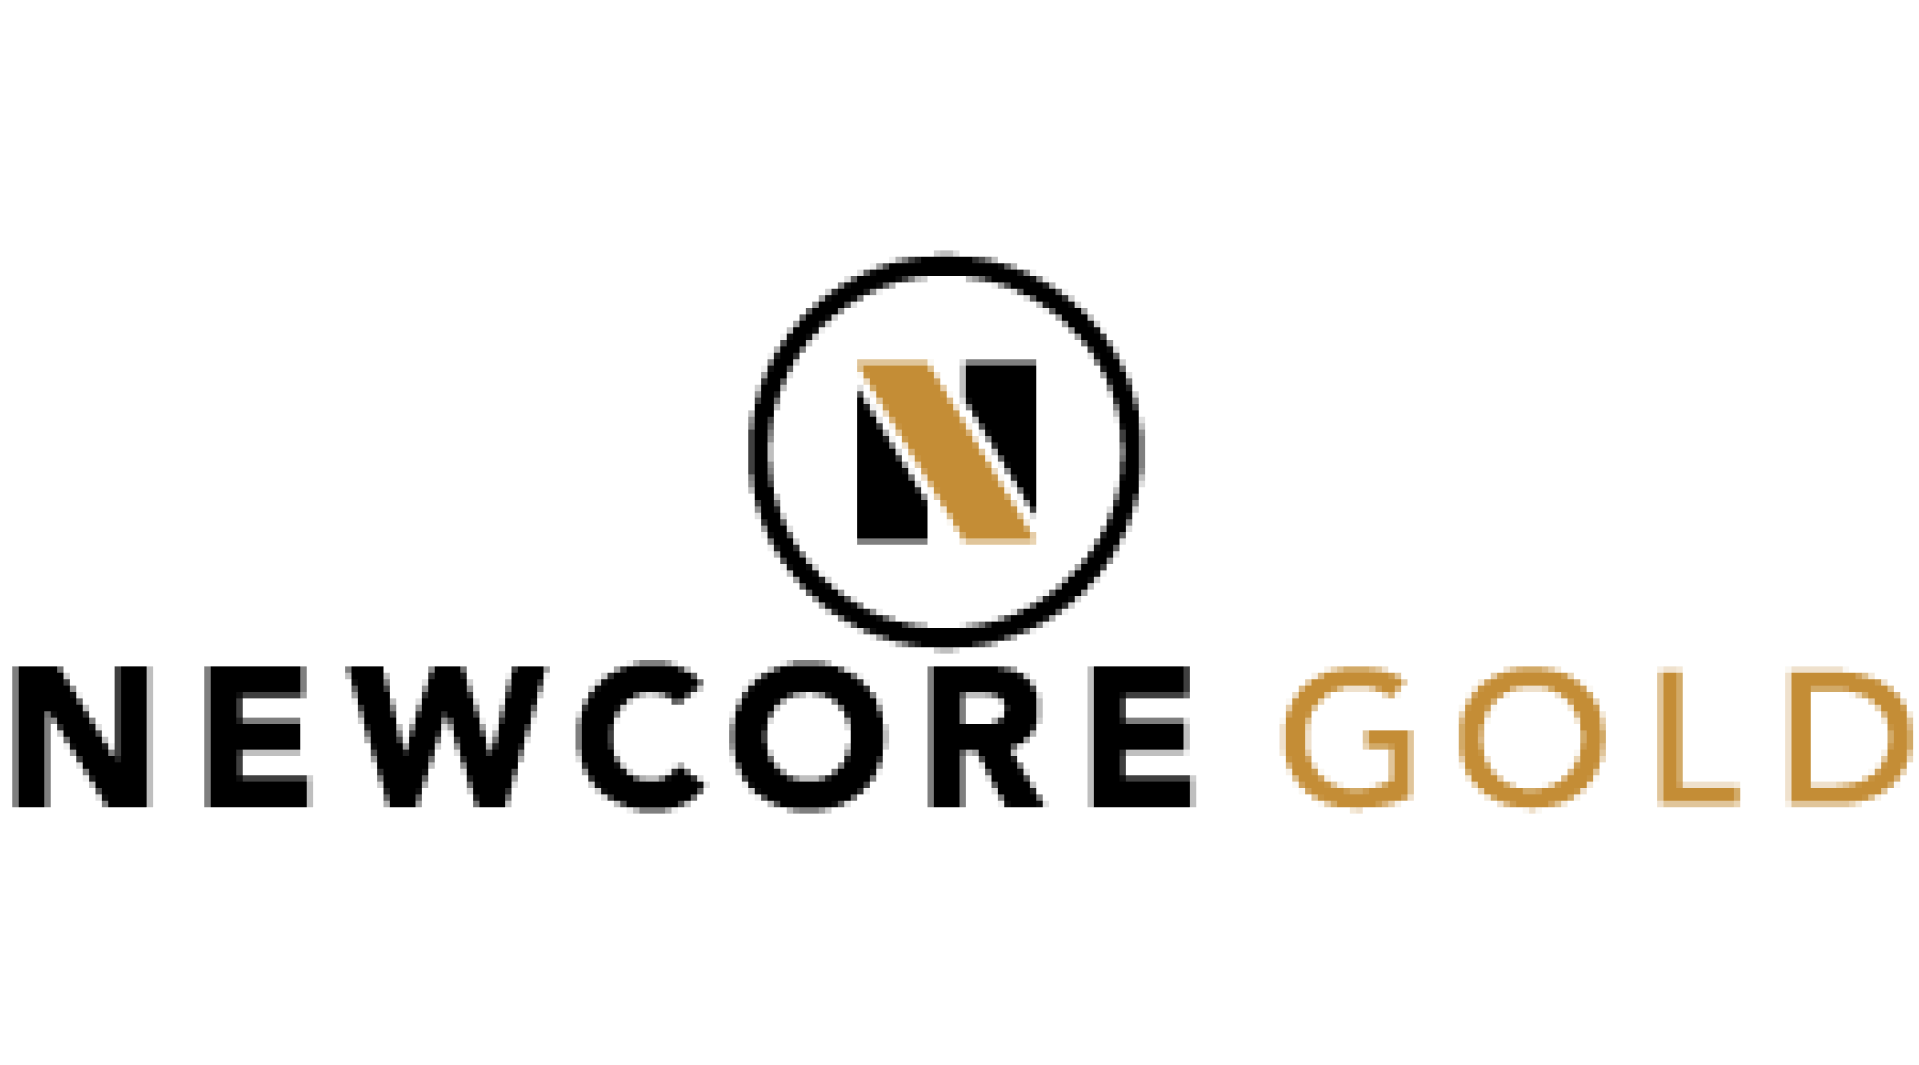 Newcore Gold Ltd.